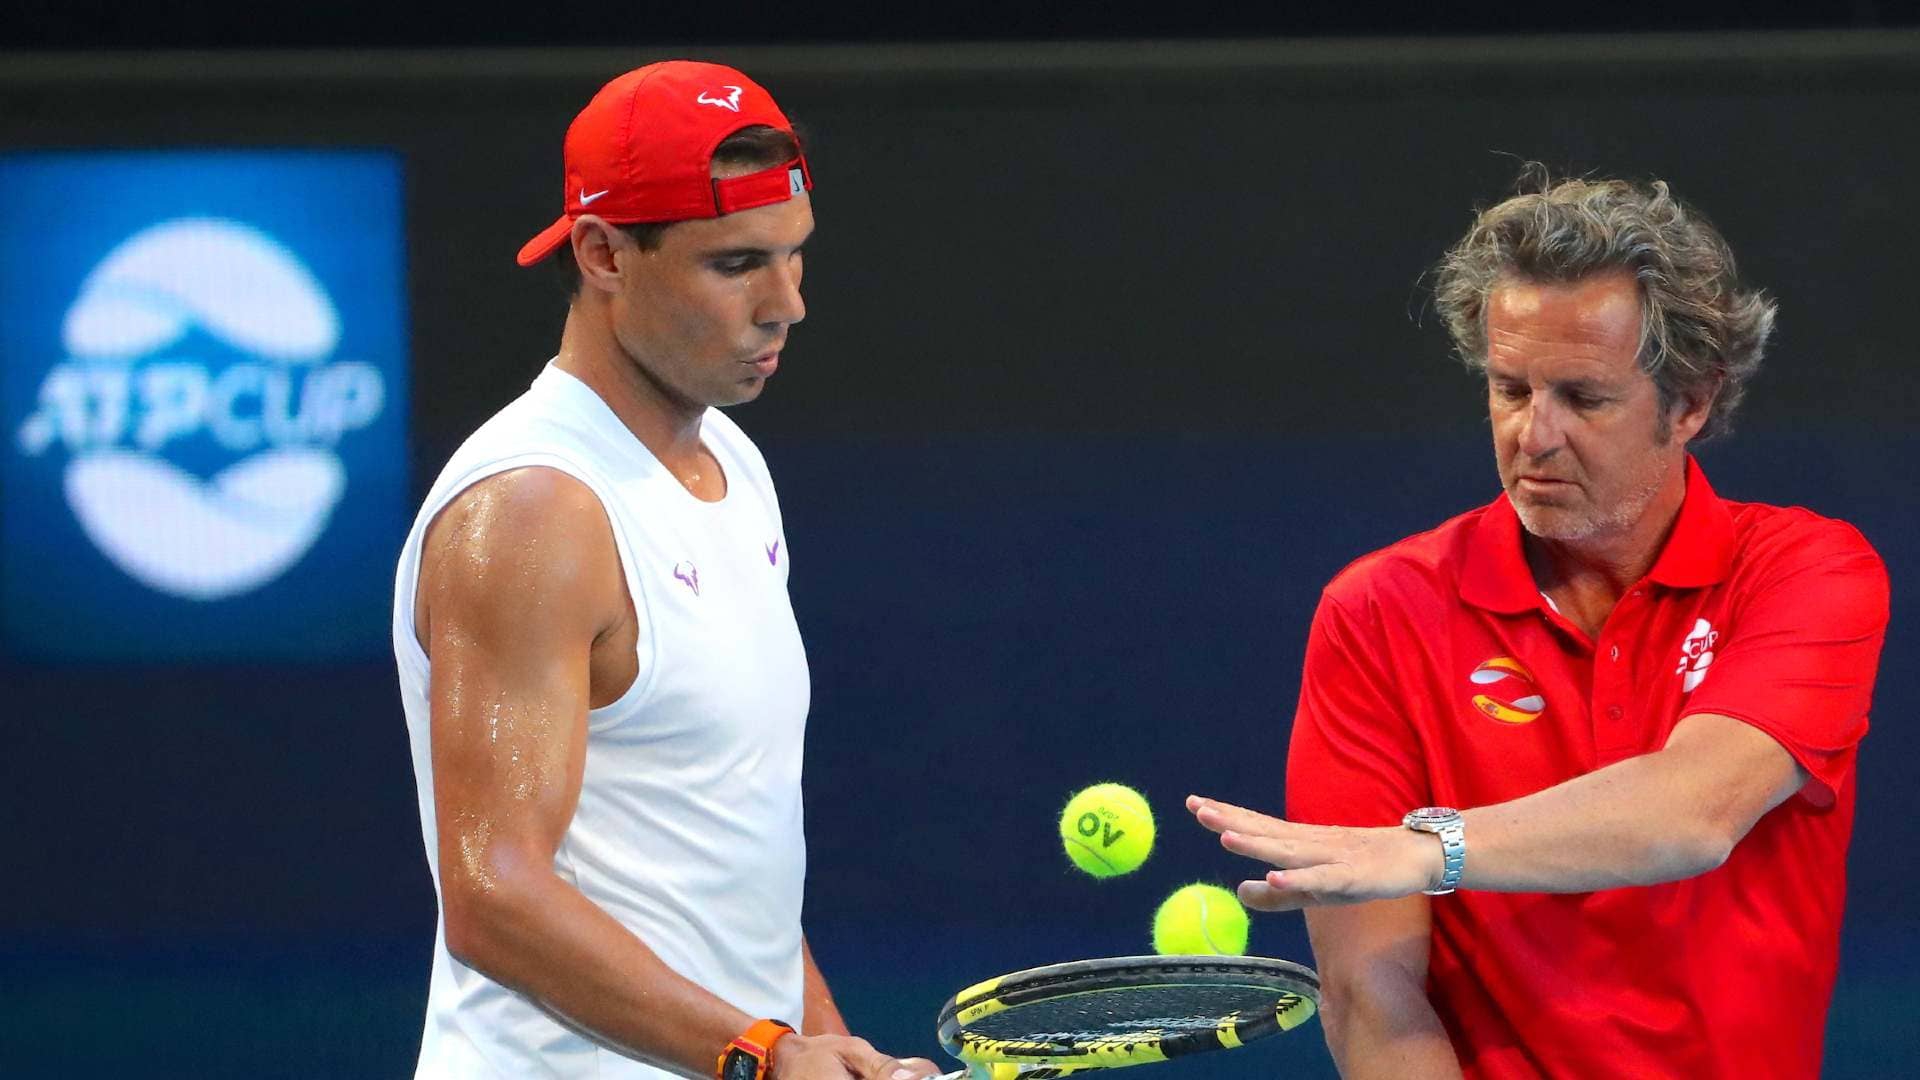 Треньорът на Надал: Рафа се чувства отлично и е готов да спре Джокович на US Open